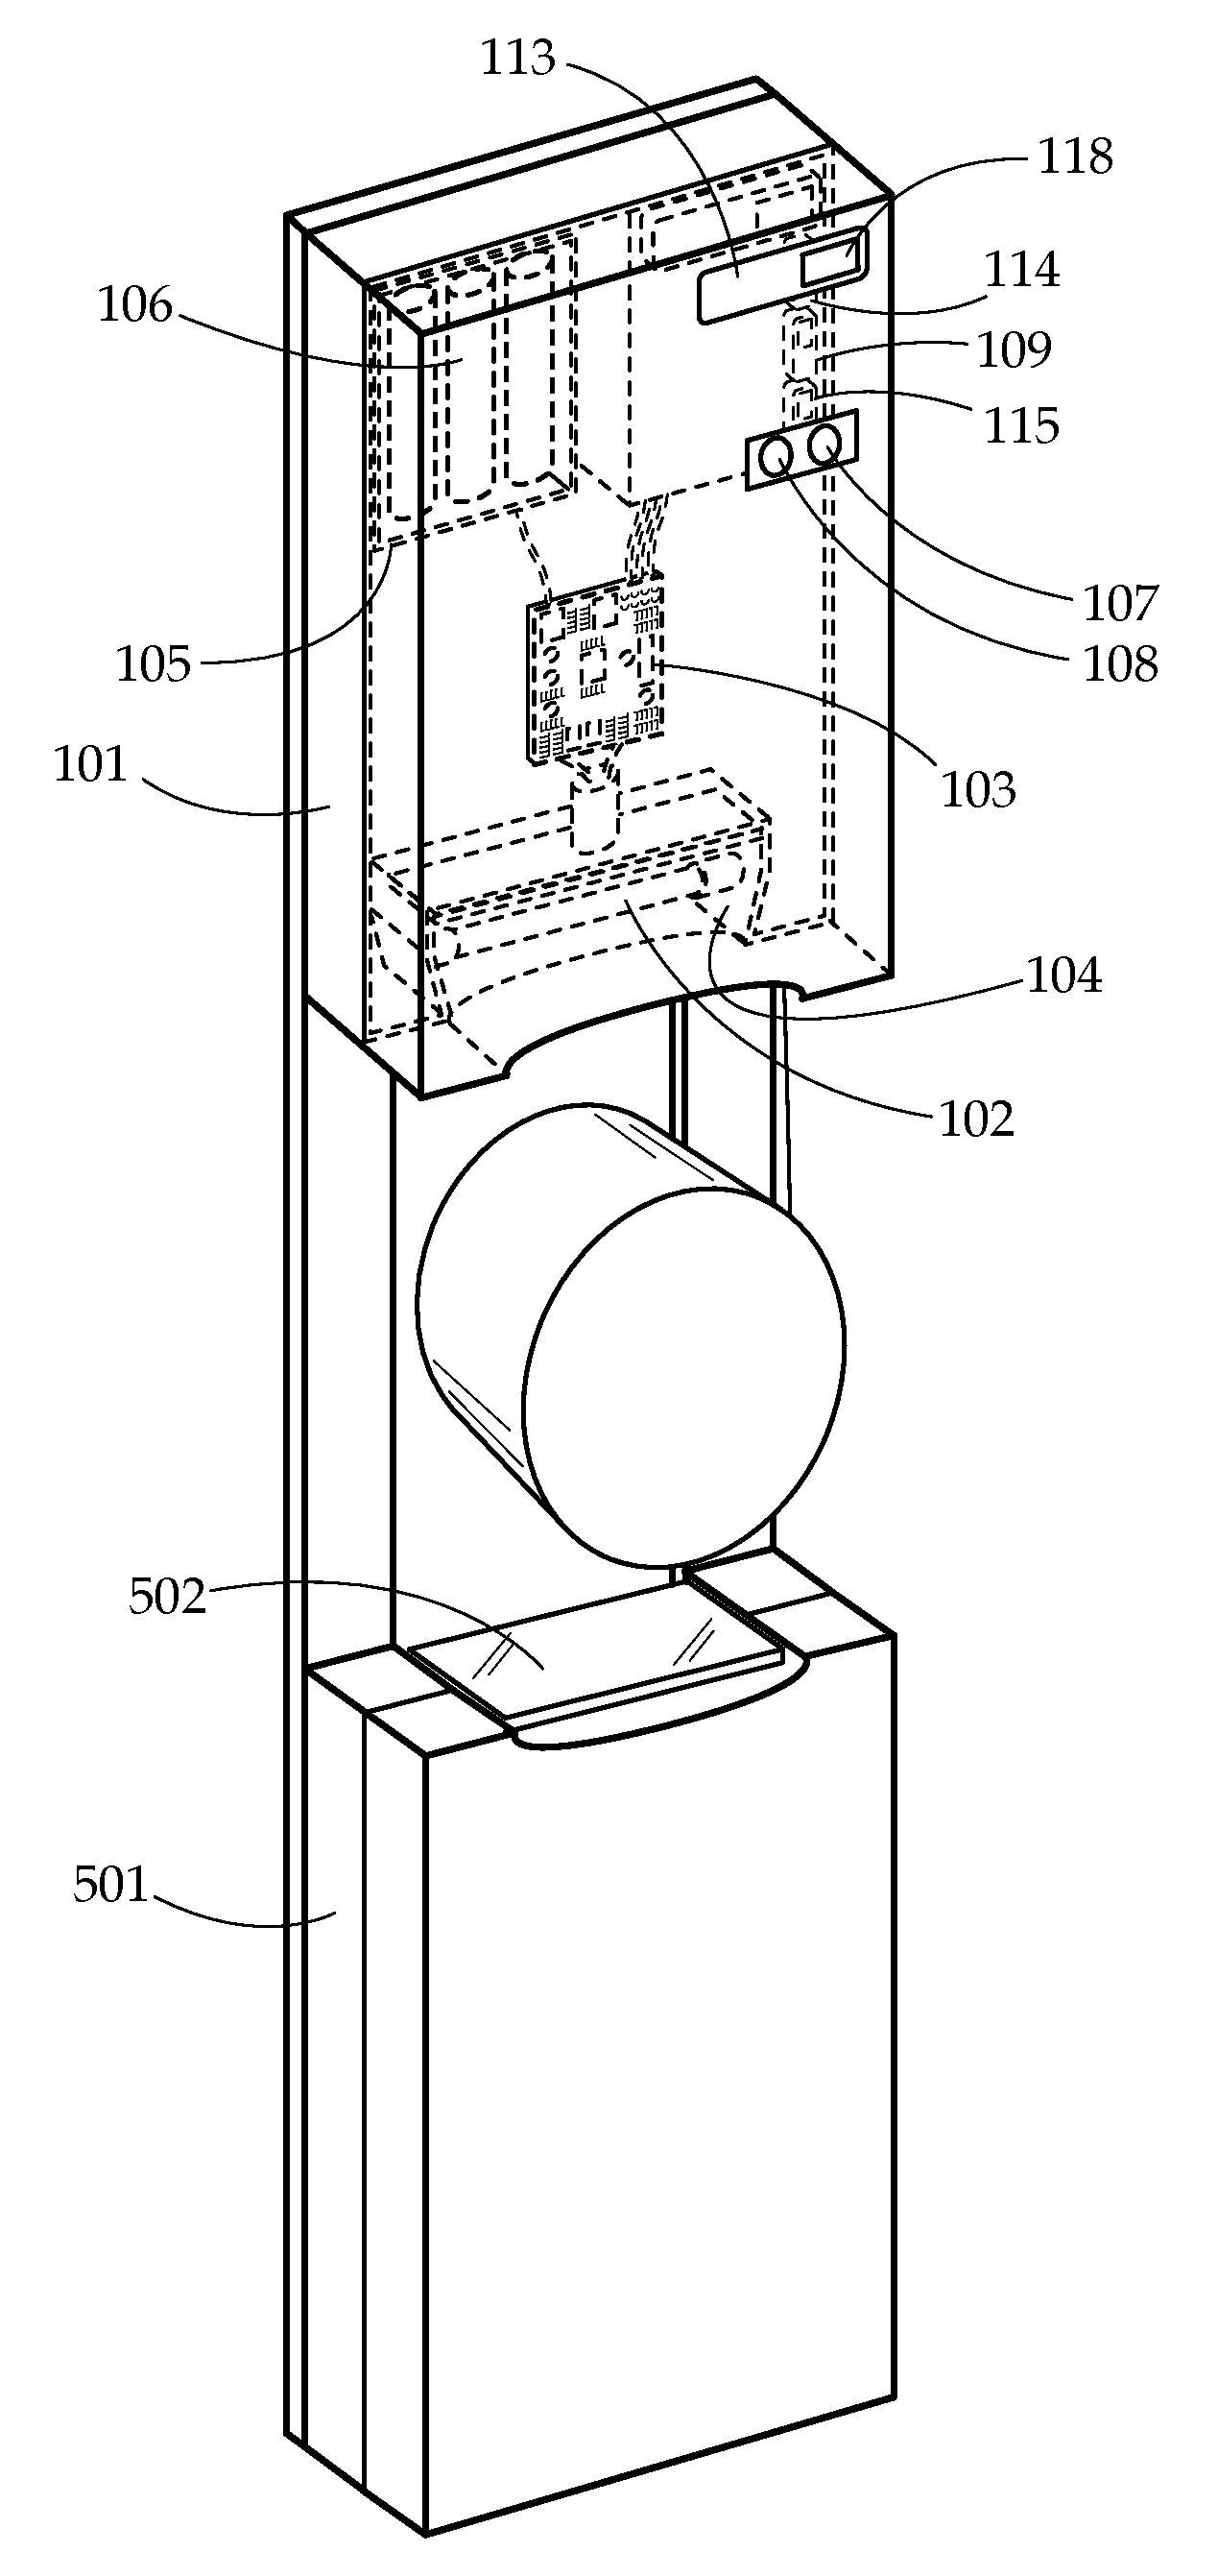 Doorknob sterilization apparatus